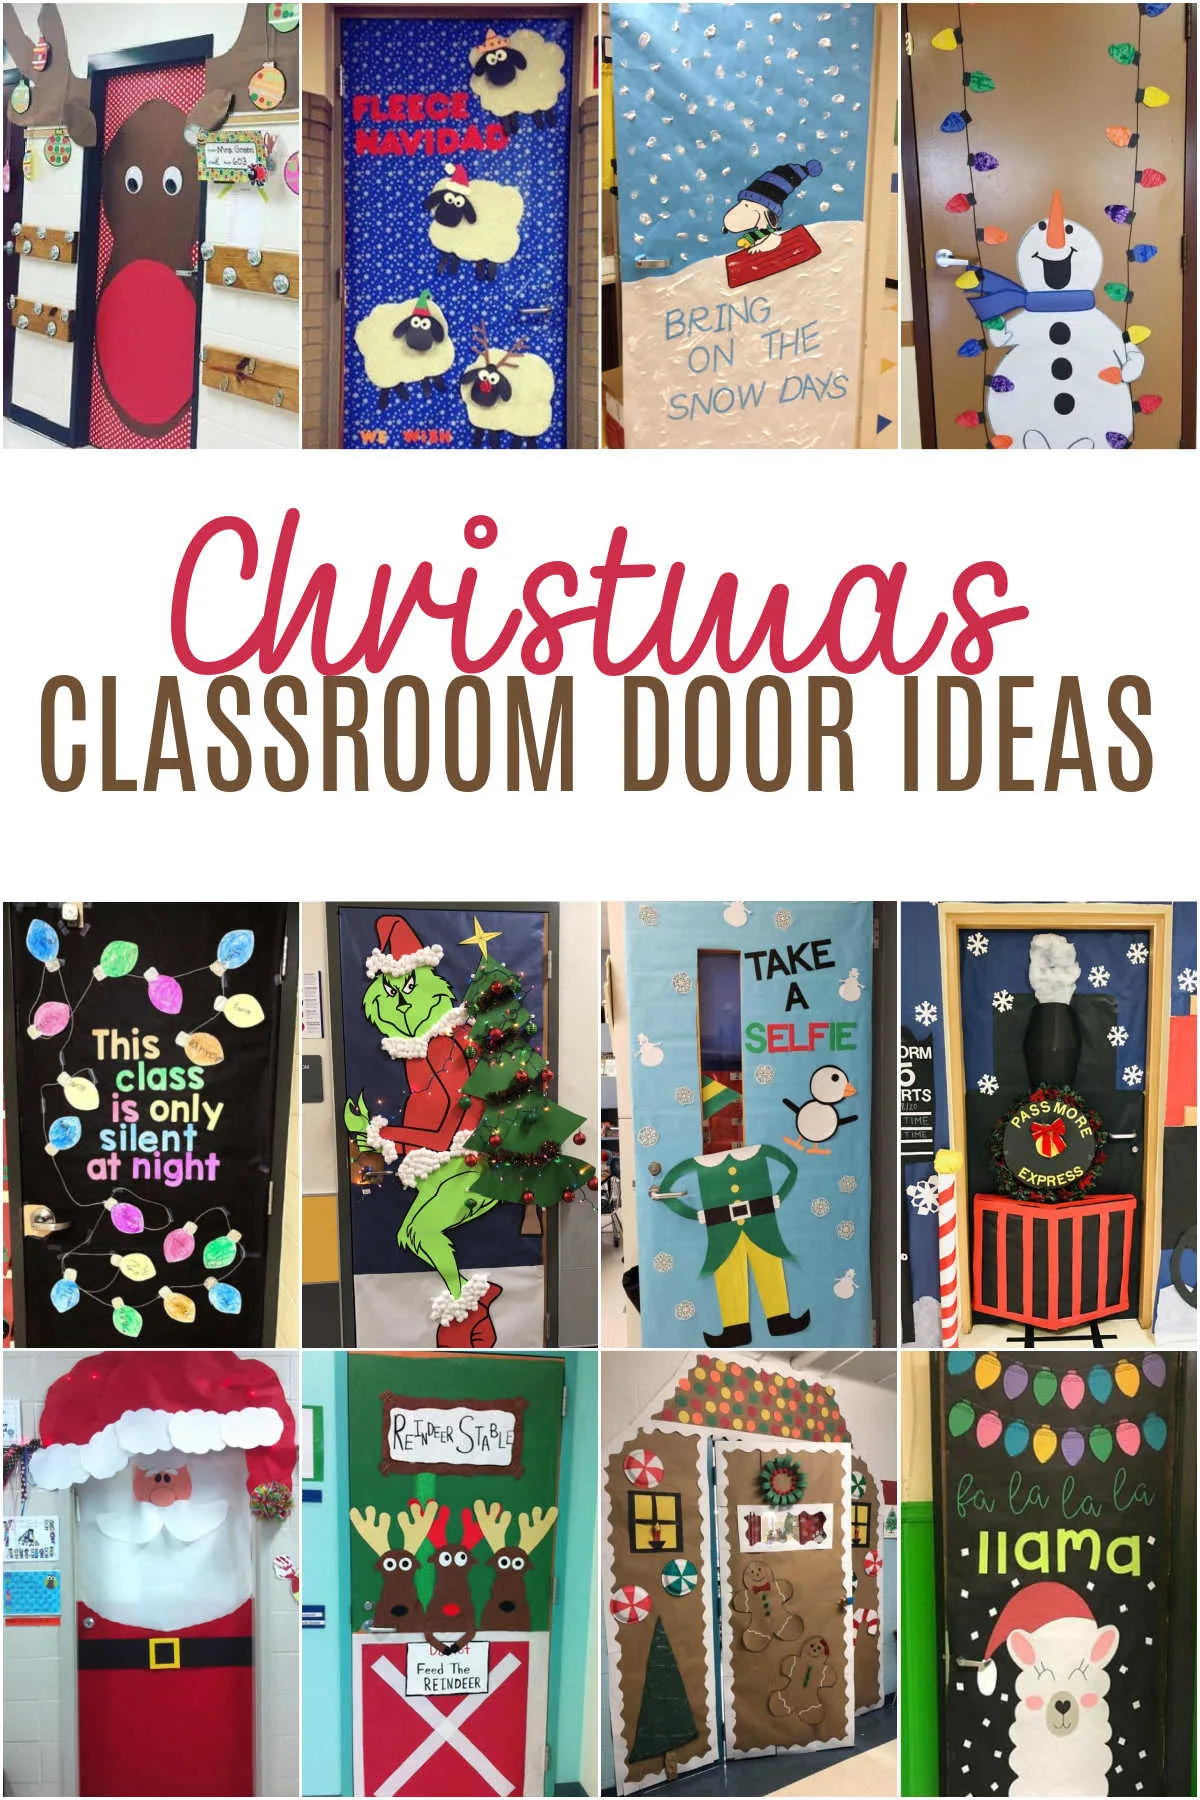 equivocado Juramento lago Creative Holiday & Christmas Door Ideas for the Classroom